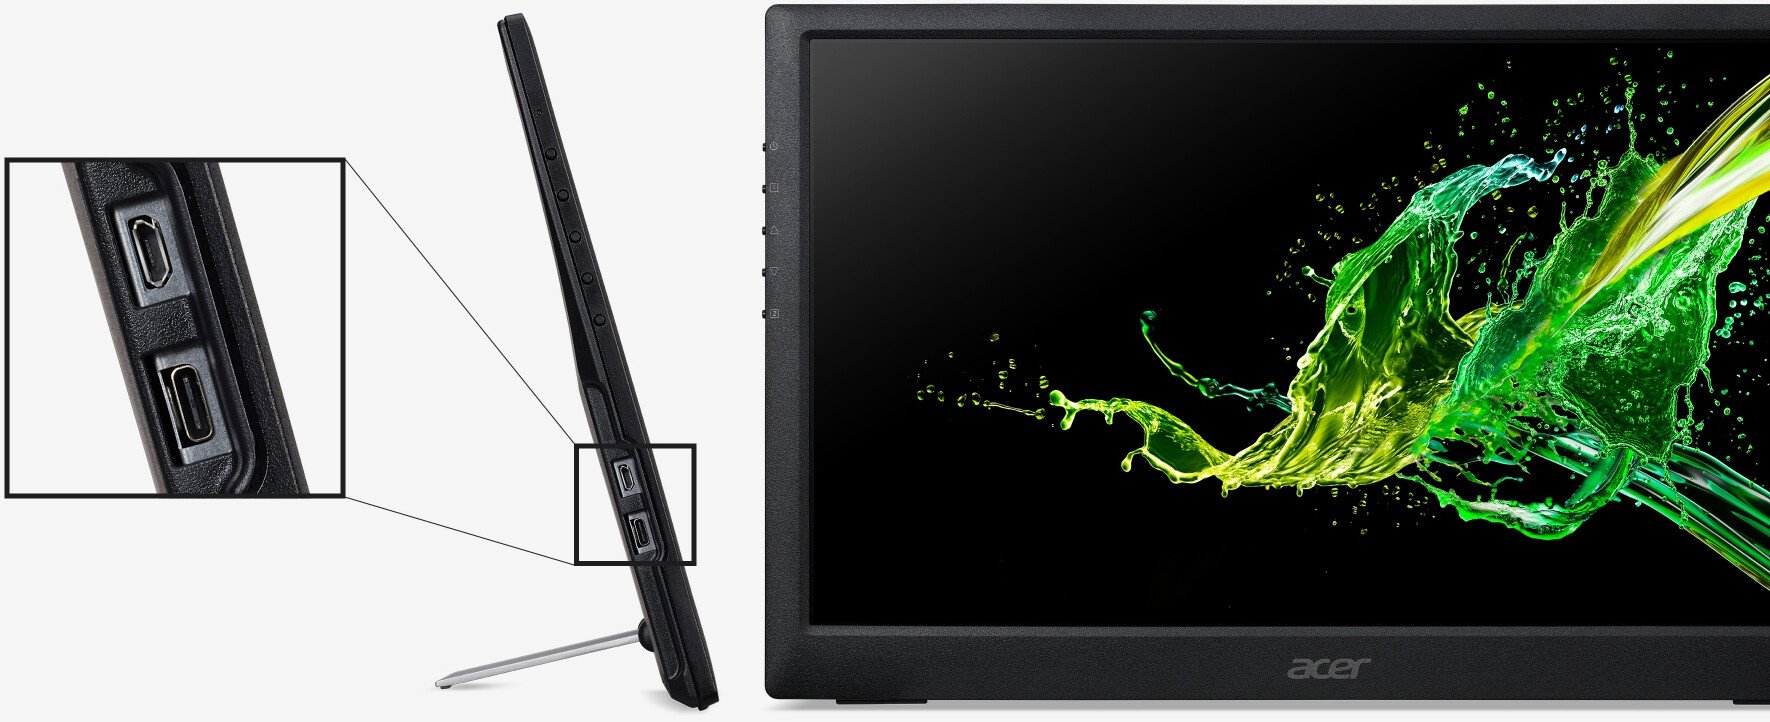 Acer از نمایشگر قابل حمل جدید خود رونمایی کرد